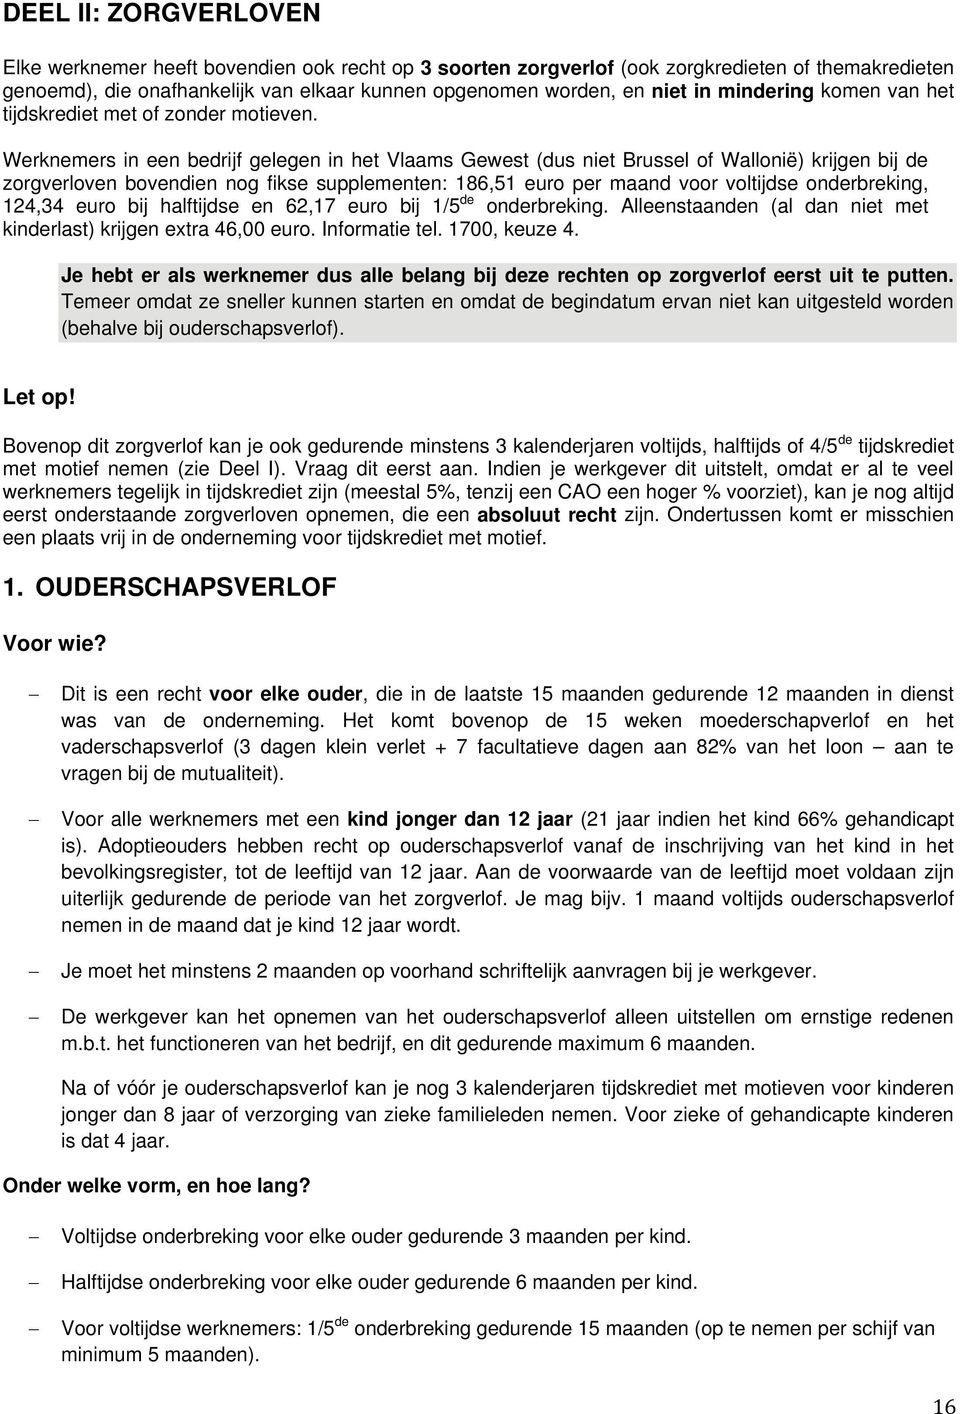 Werknemers in een bedrijf gelegen in het Vlaams Gewest (dus niet Brussel of Wallonië) krijgen bij de zorgverloven bovendien nog fikse supplementen: 186,51 euro per maand voor voltijdse onderbreking,